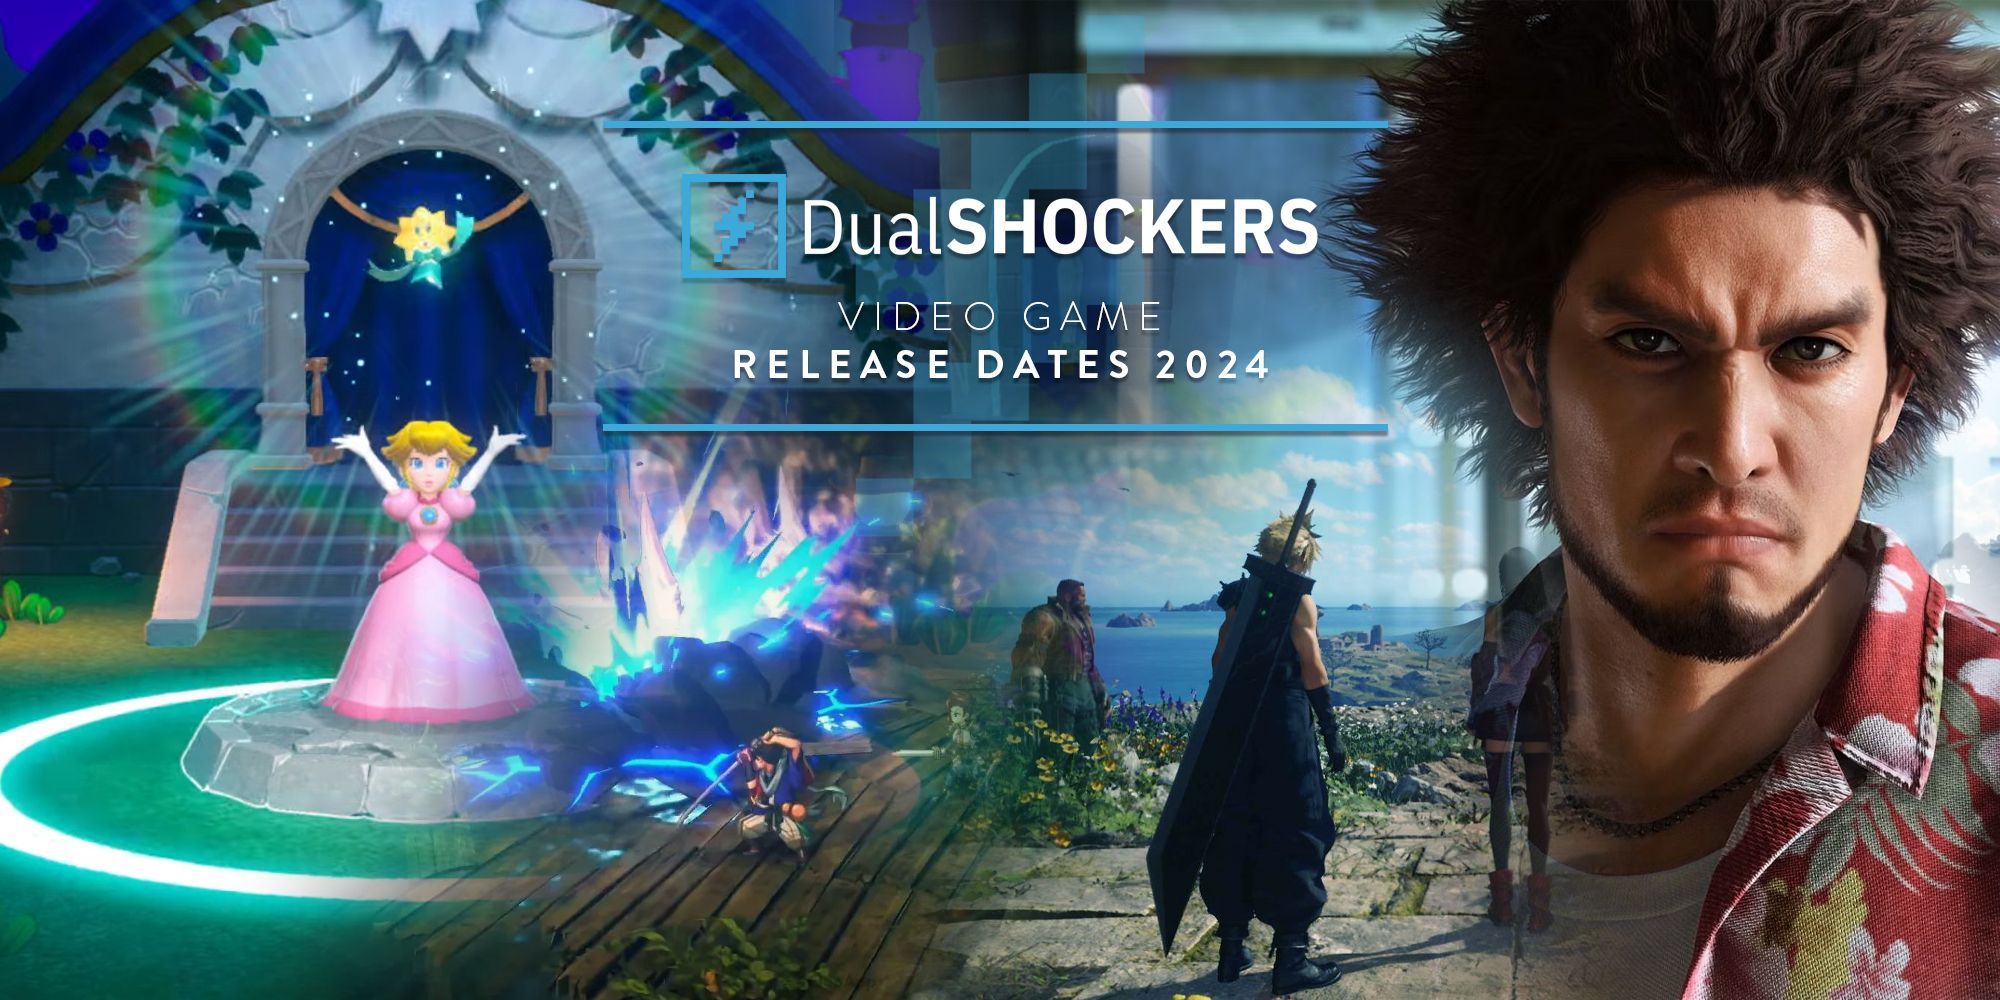 Datas de lançamento do videogame DualShockers em 2024